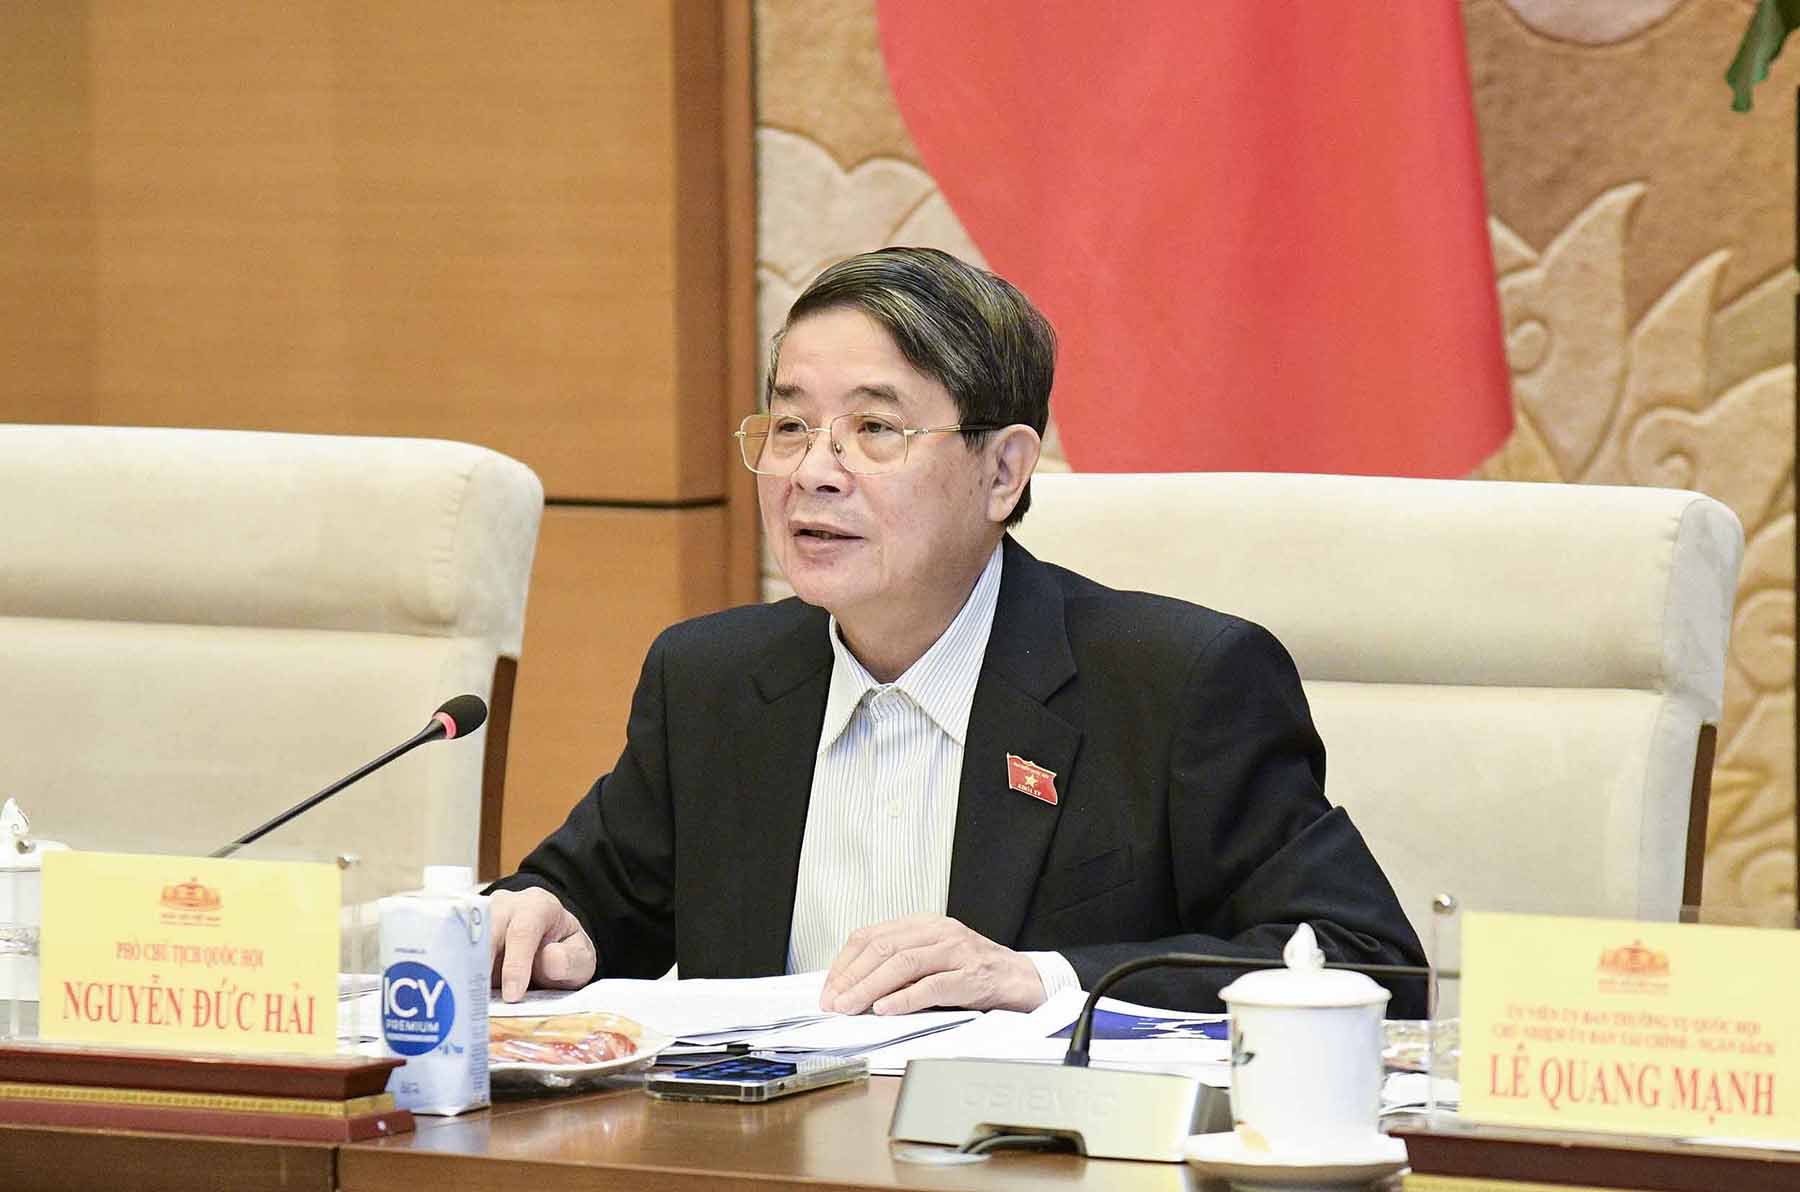 Phó Chủ tịch Quốc hội Nguyễn Đức Hải chủ trì buổi làm việc. Ảnh: Minh Thành/VPQH